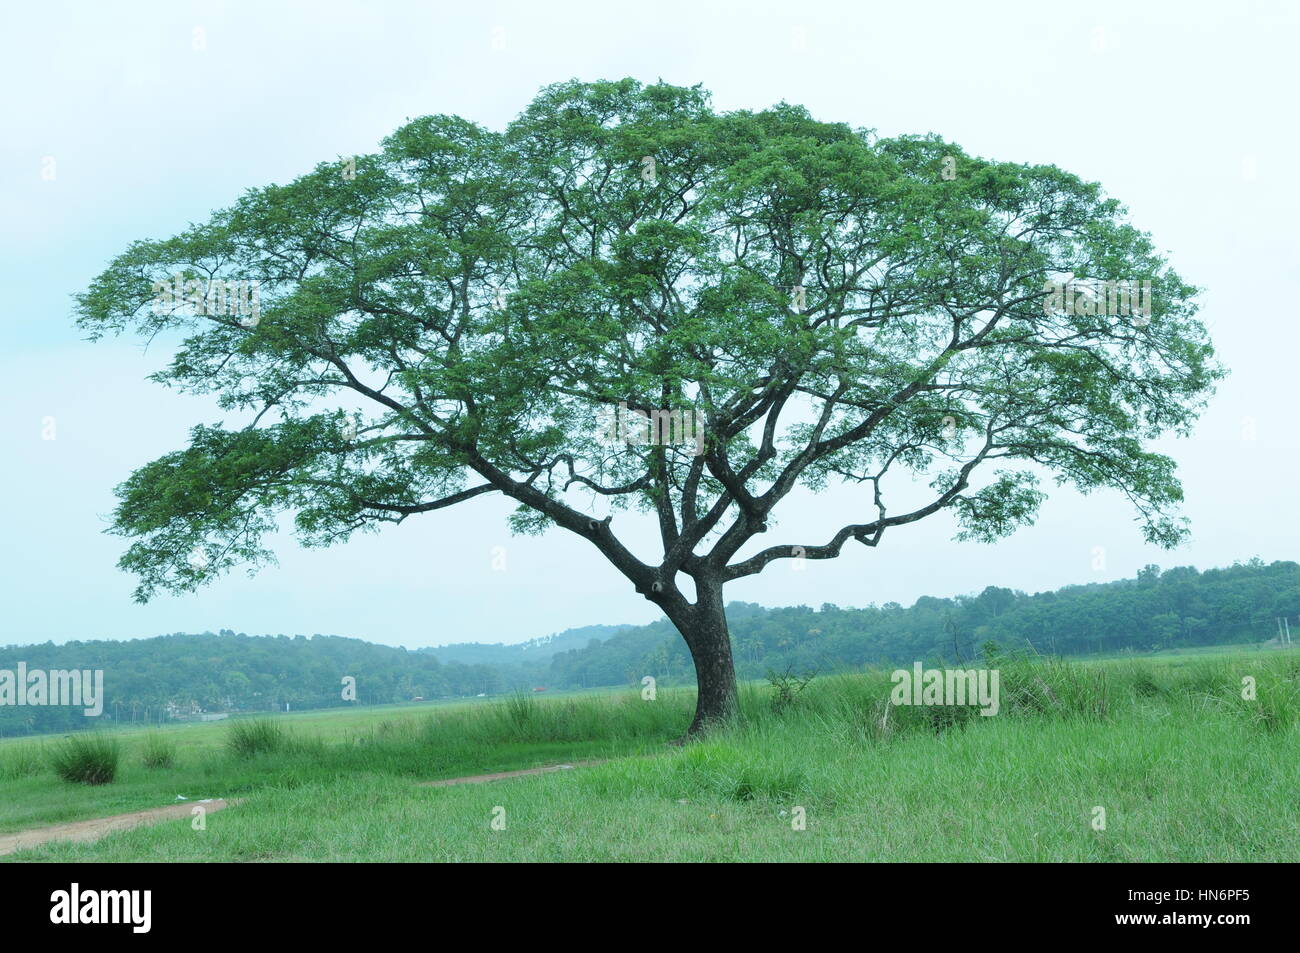 Tree from Munnar, Kerala (Photo Copyright © Saji Maramon) Stock Photo